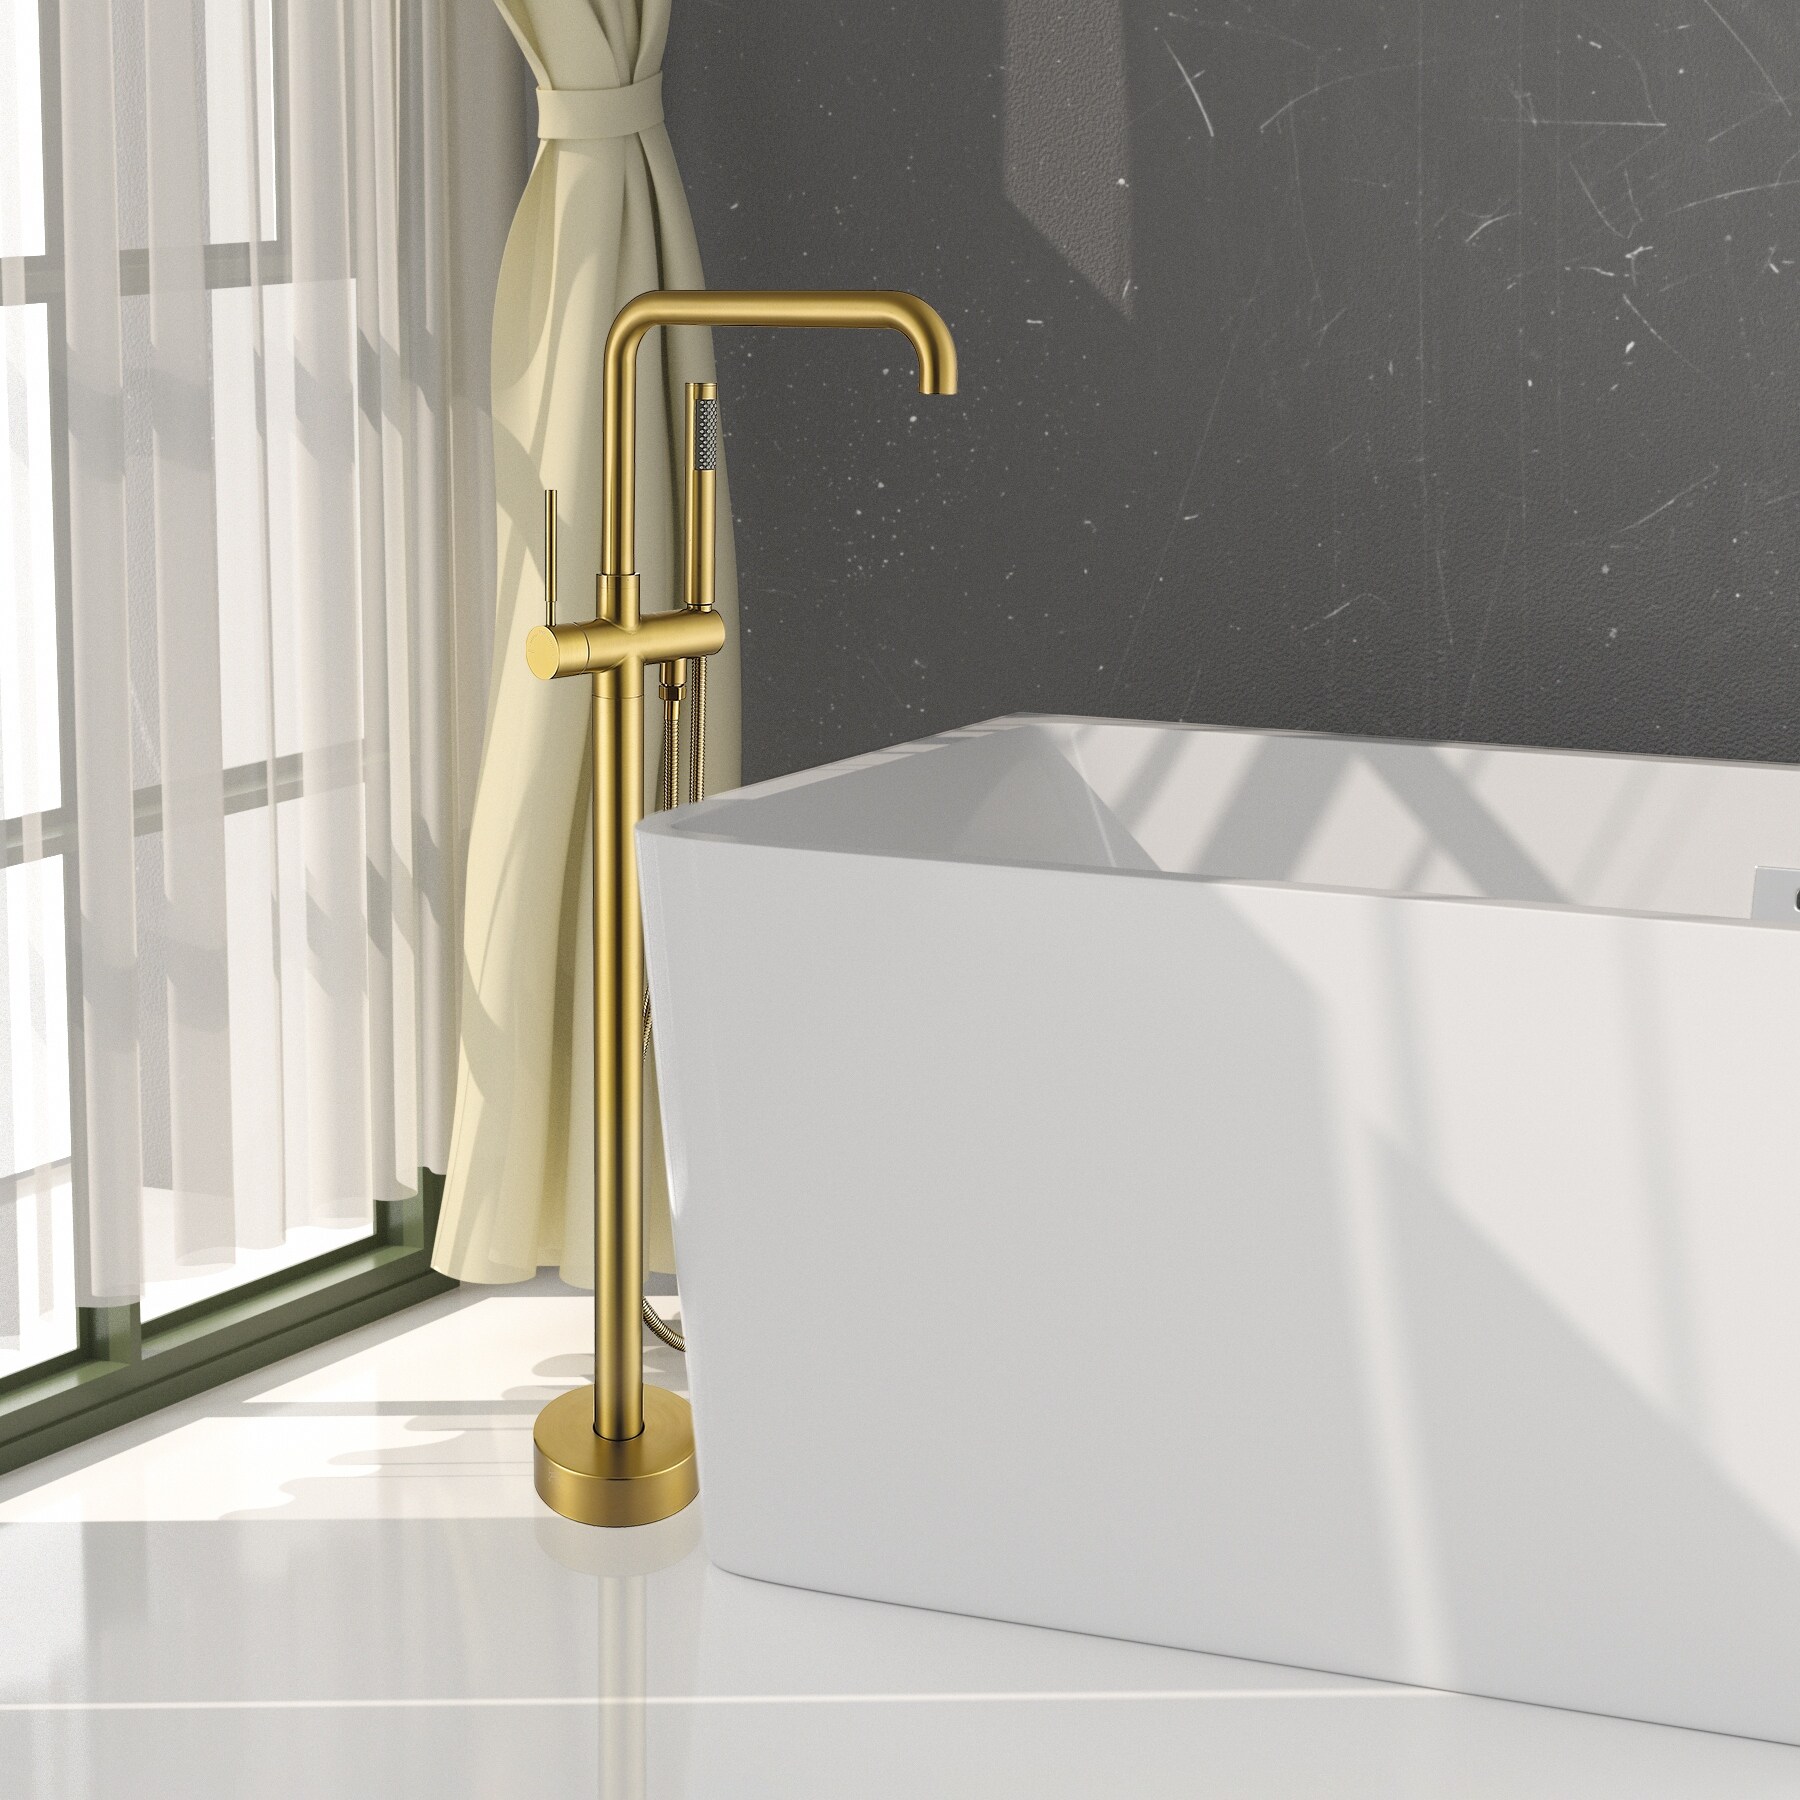 Topcraft Floor Mount Bathtub Filler Freestanding Bathroom Faucet with Handheld Shower